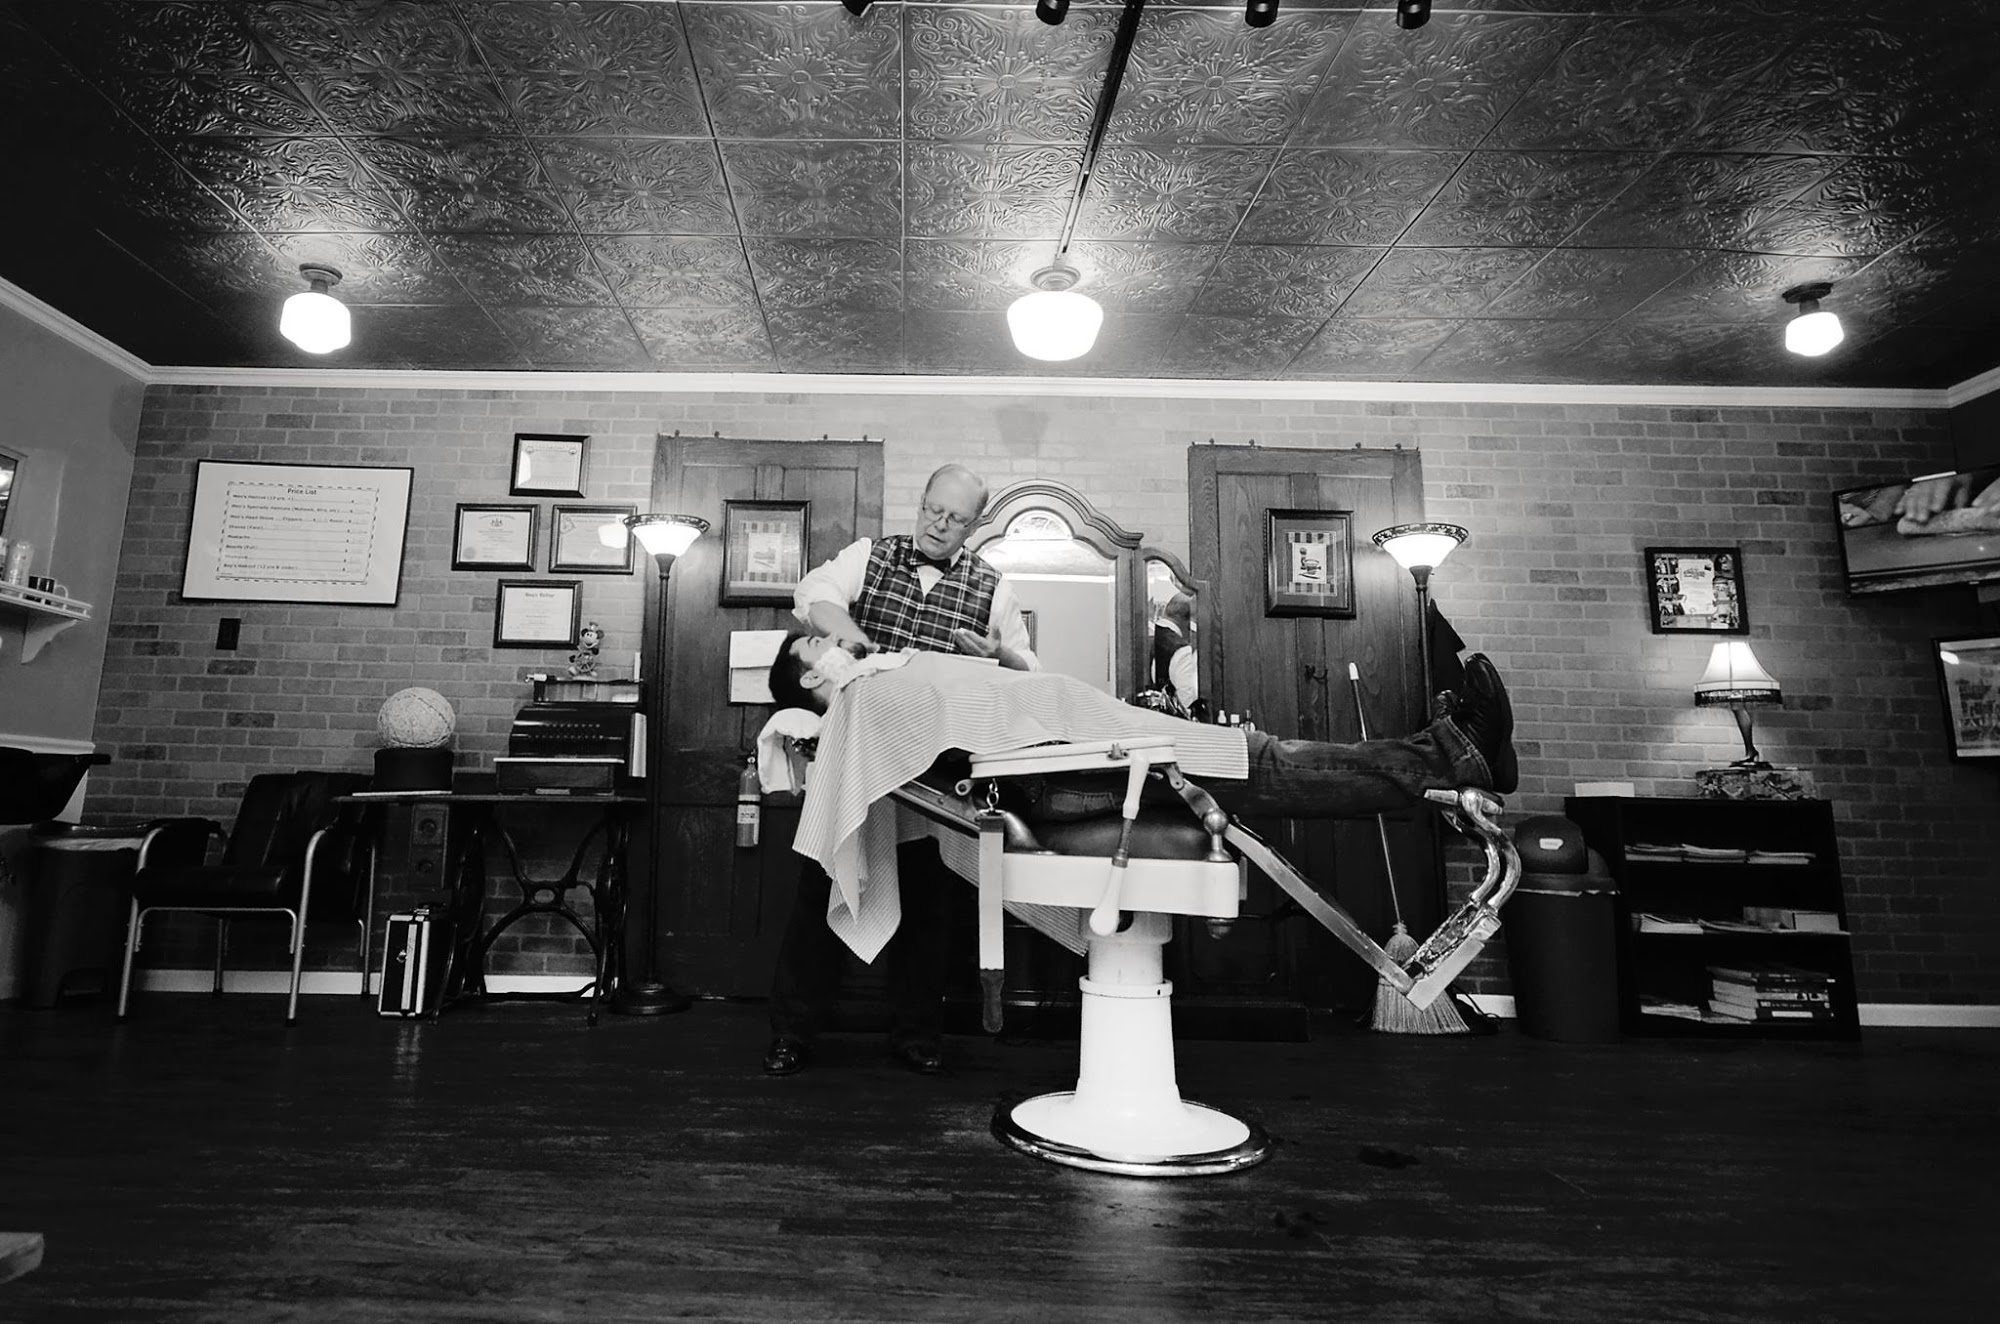 Carey's Avenue Barber Shop